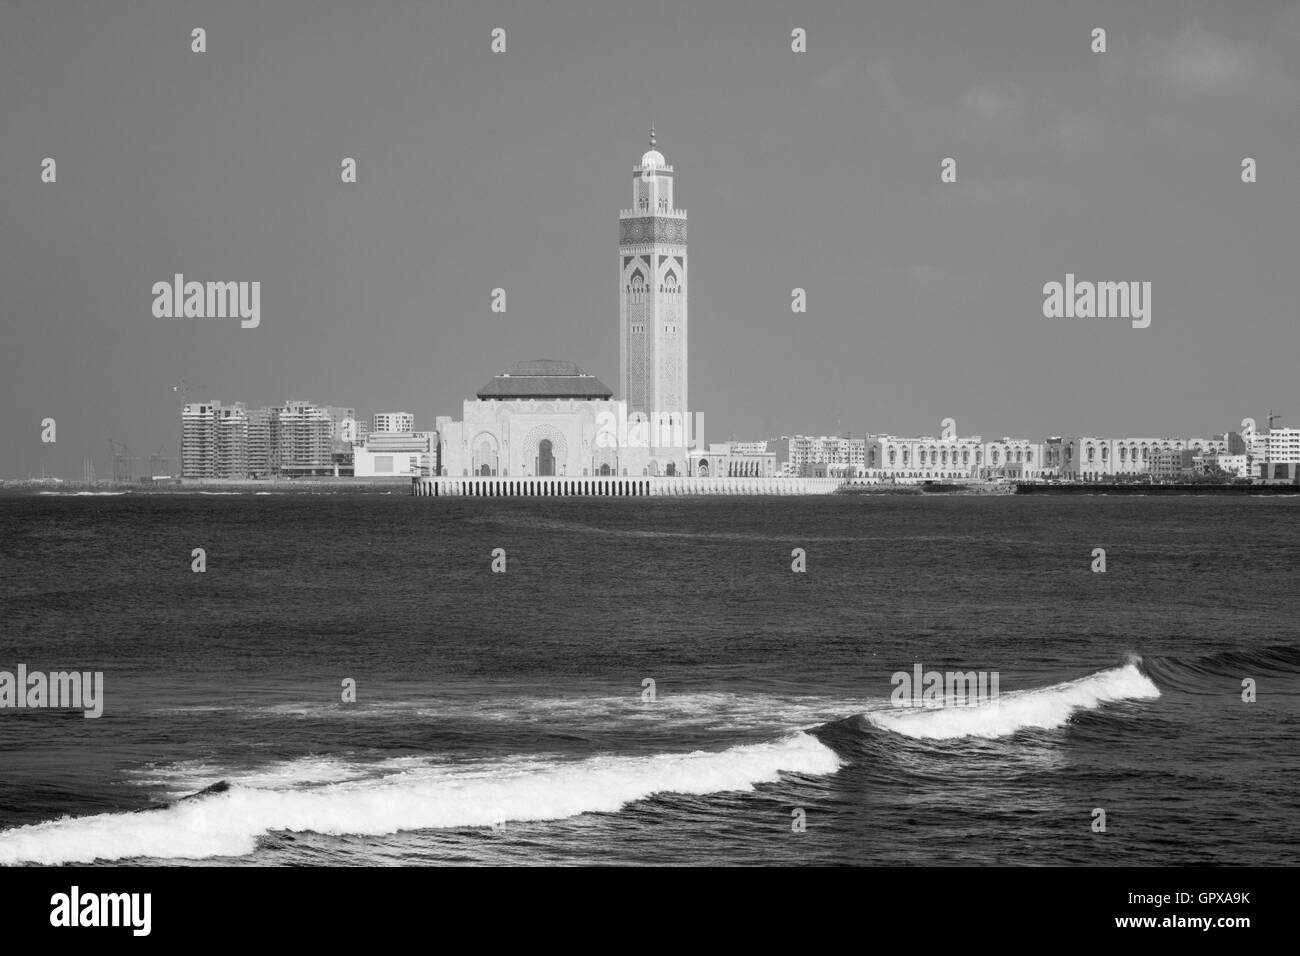 Moschea Hassan II, Casablanca, Marocco Foto Stock